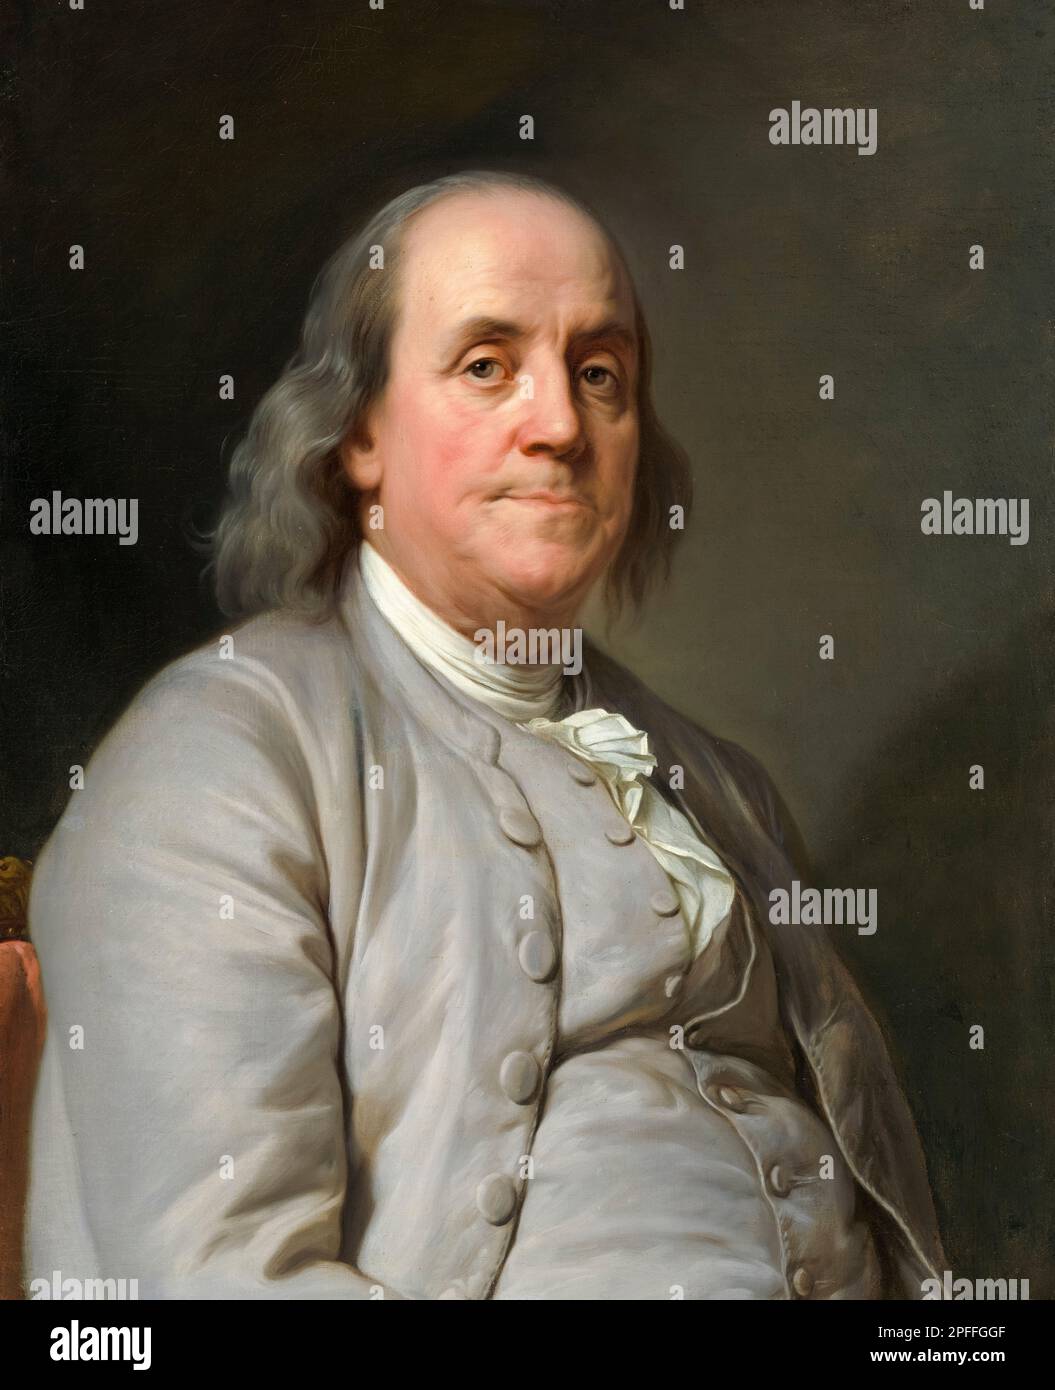 Benjamin Franklin (1706-1790), écrivain, scientifique, inventeur, et homme d'état. L'un des Pères fondateurs des États-Unis, portrait peint à l'huile sur toile par Joseph Siffred Duplessis, vers 1785 Banque D'Images